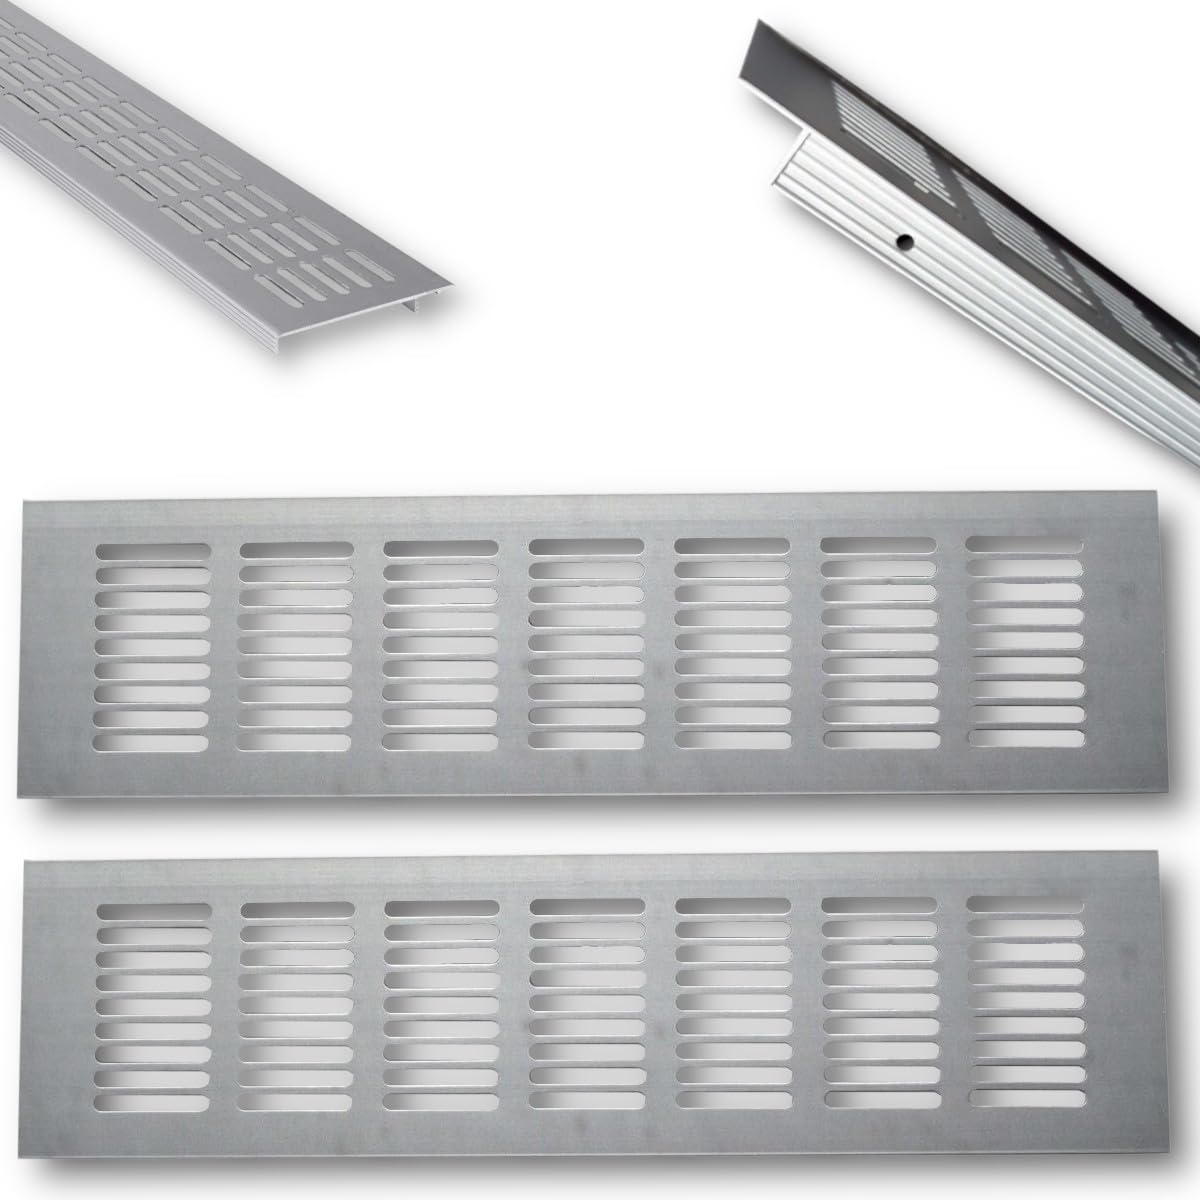 Euro Tische 2x Aluminium Lüftungsgitter für Eine Ideale Belüftung, Belüftungsgitter für Küche, Bad, Toilette, Garage und Wohnzimmer, Abluftgitter 100 x 8 x 1.2cm